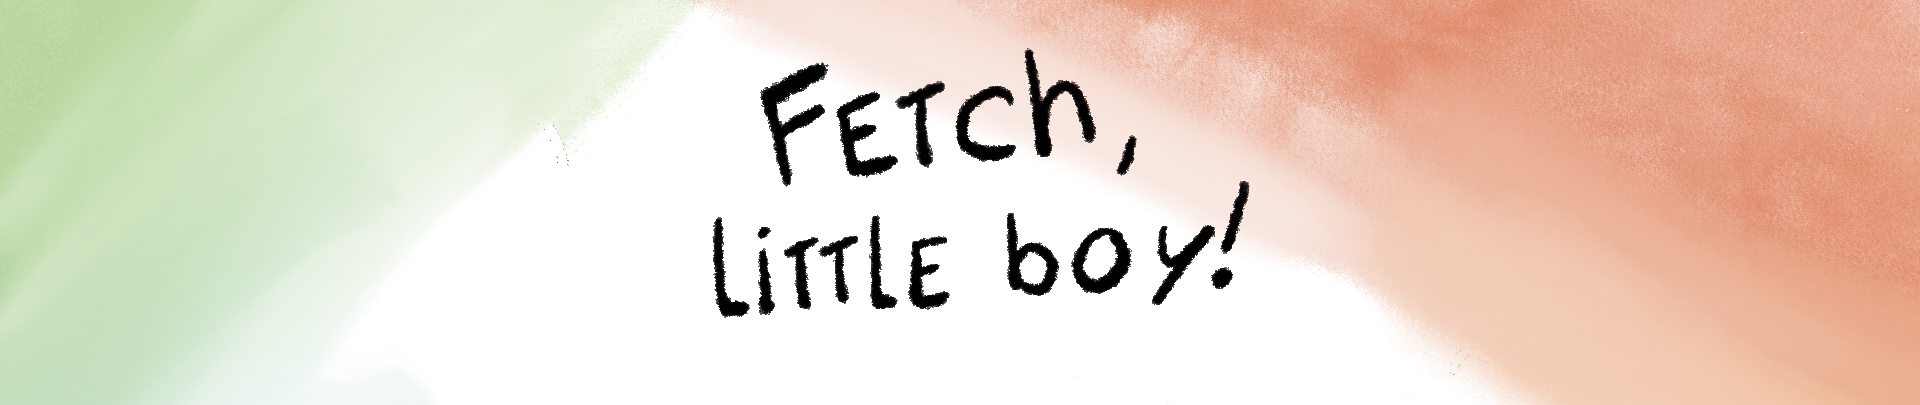 Fetch little boy !